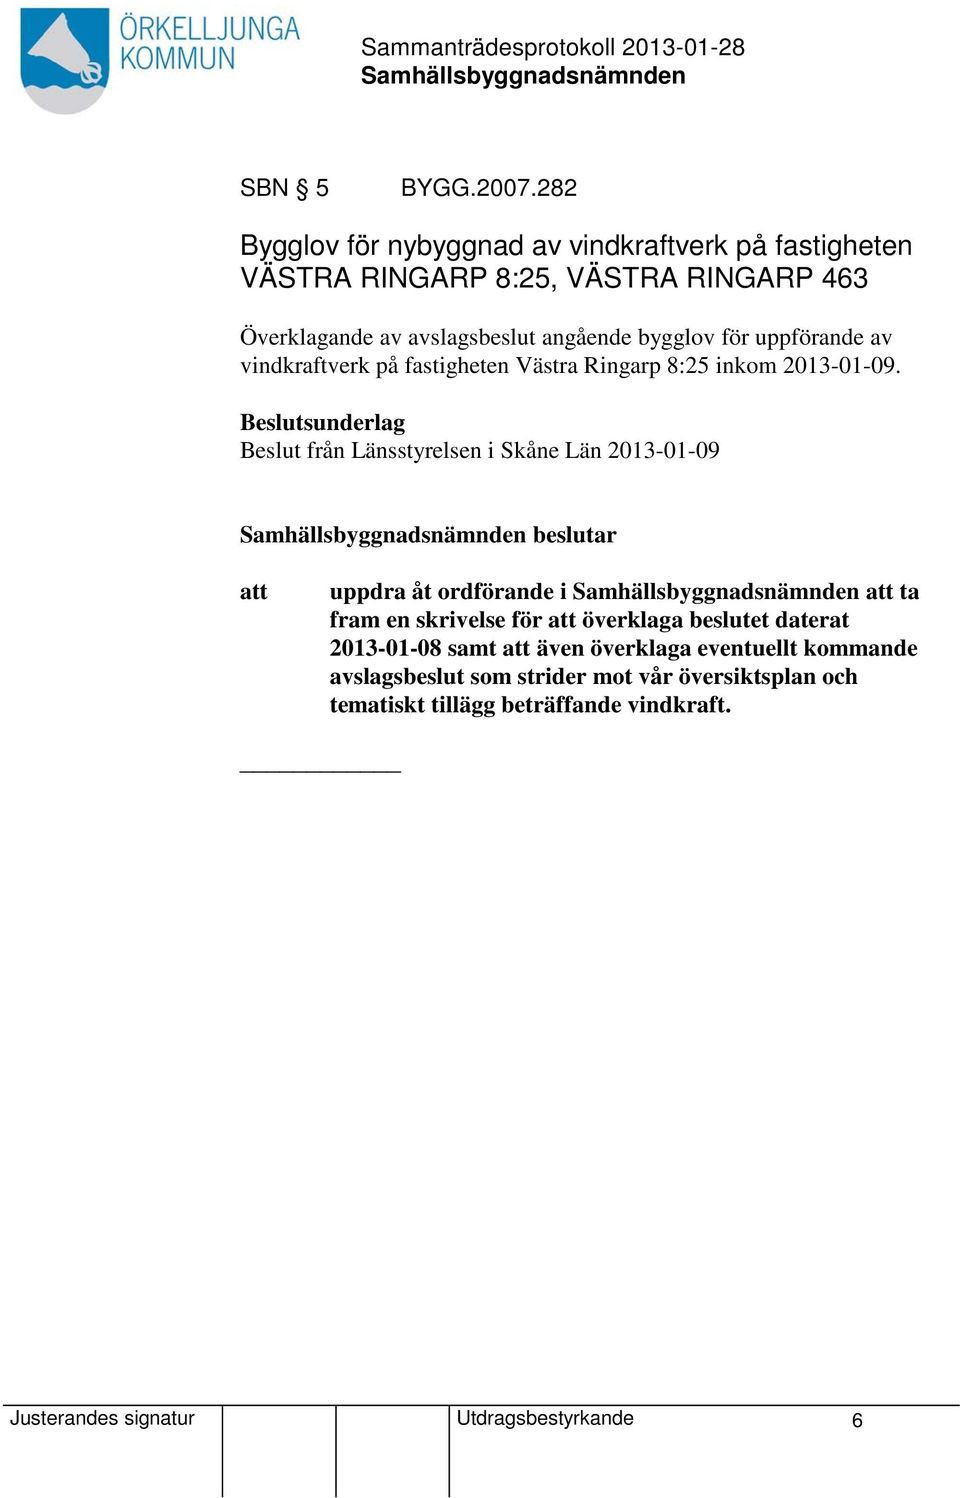 bygglov för uppförande av vindkraftverk på fastigheten Västra Ringarp 8:25 inkom 2013-01-09.